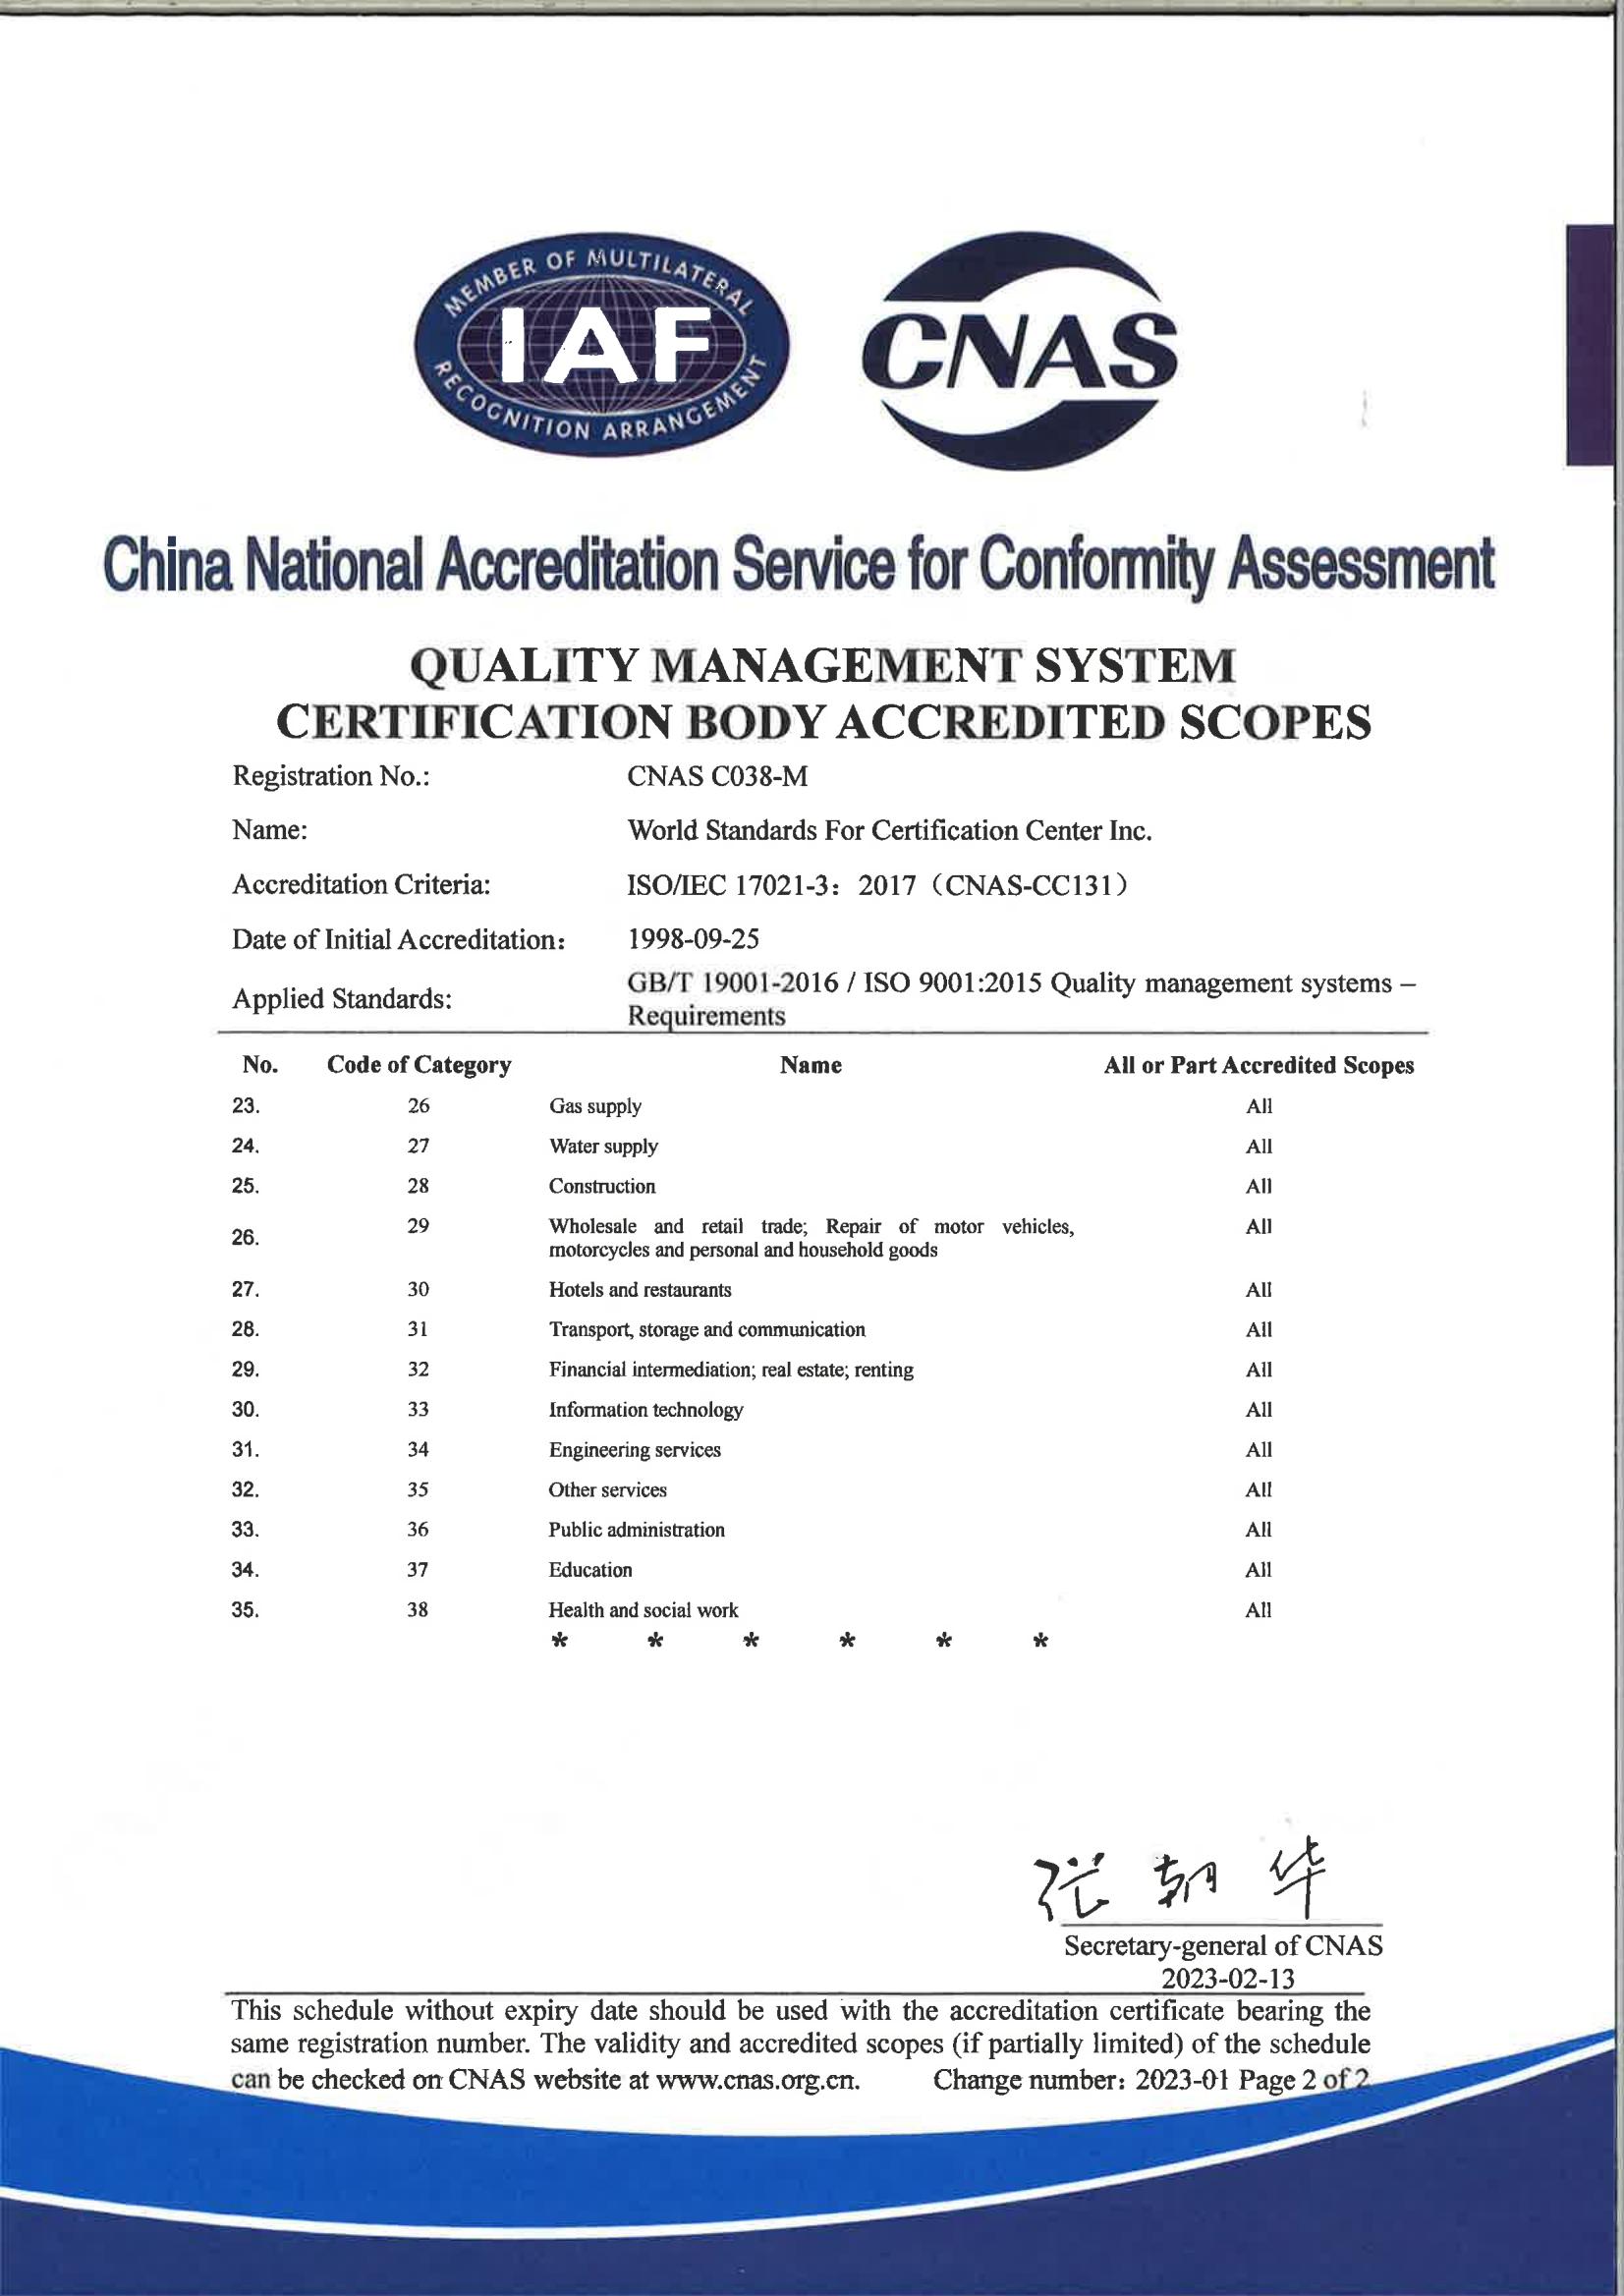 质量管理体系认证机构认可范围-英文版_01.jpg